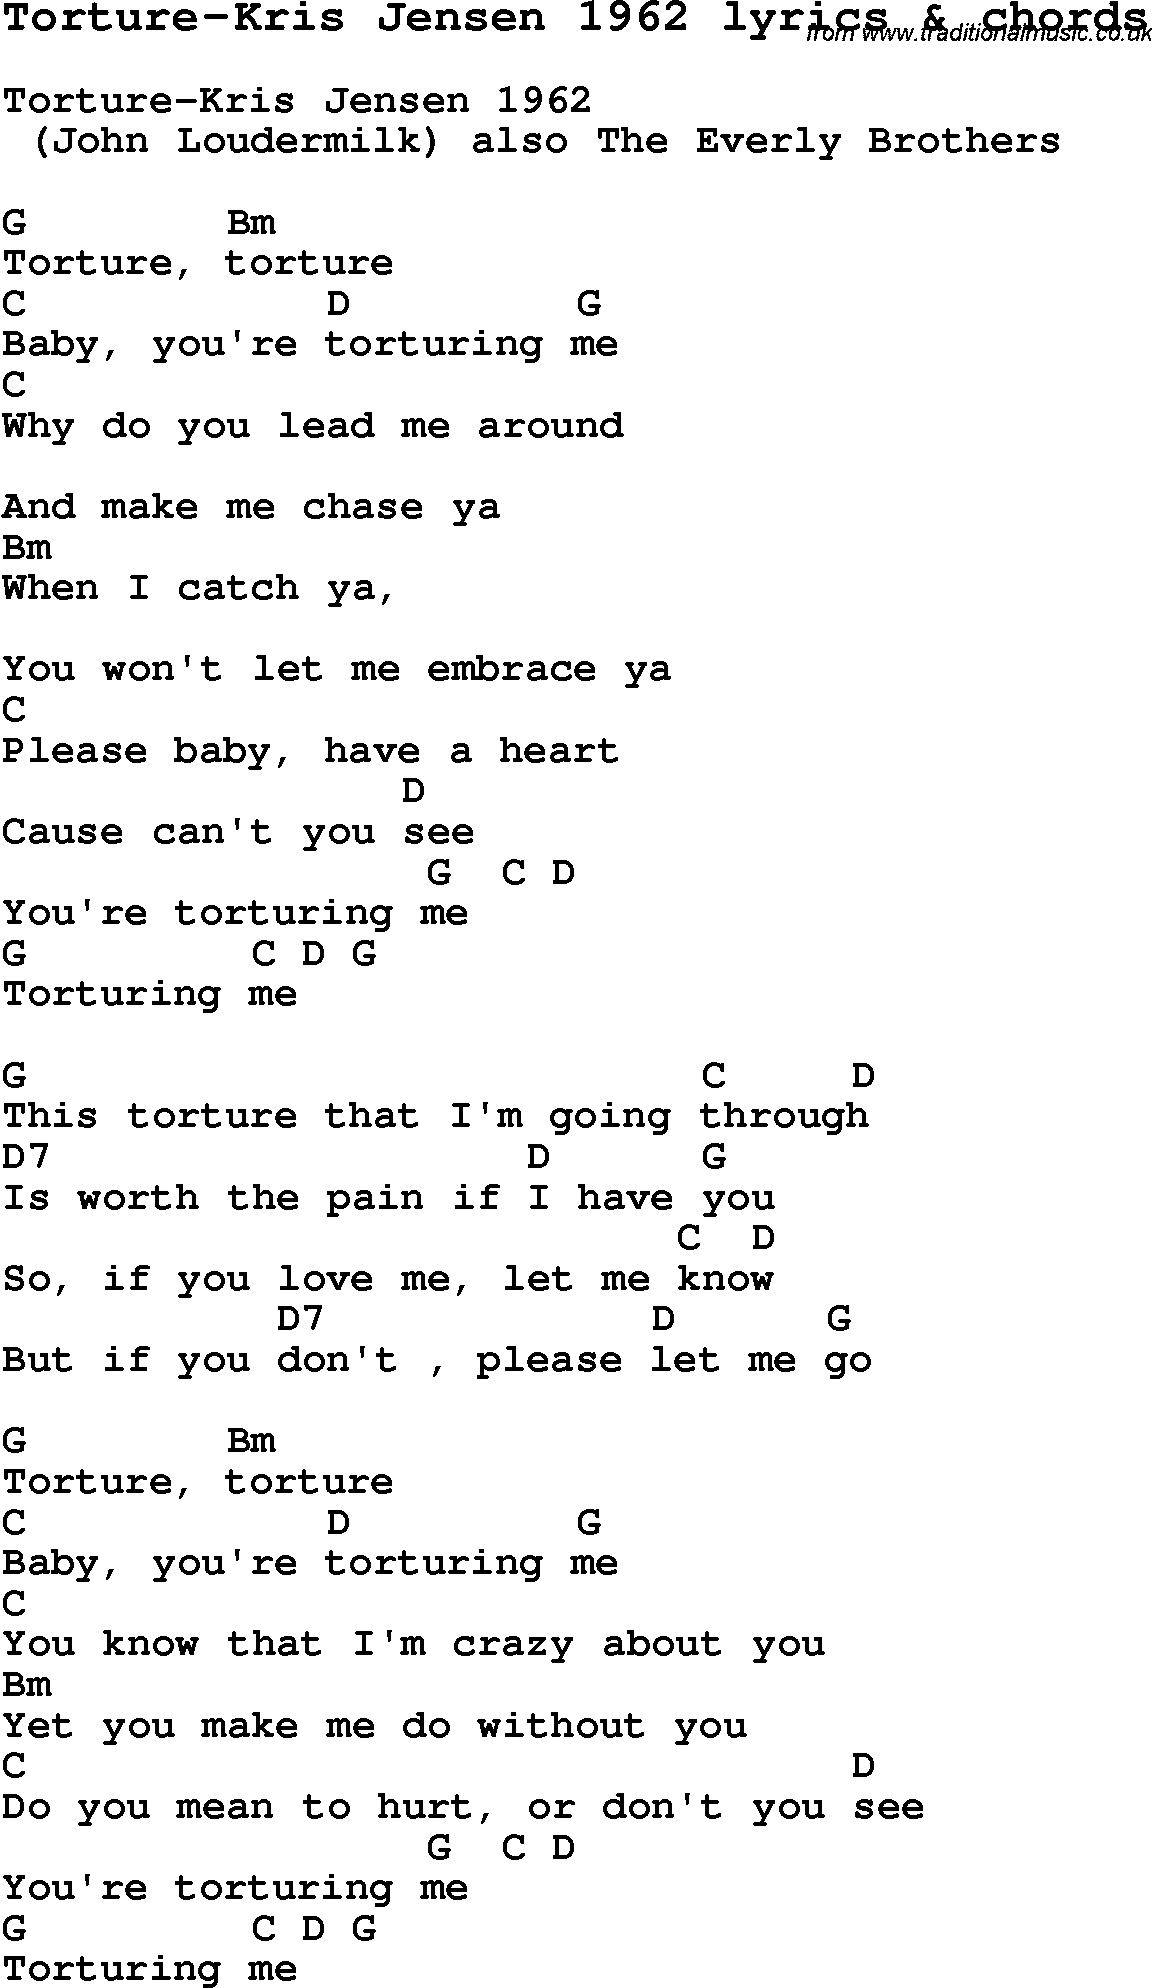 Love Song Lyrics for: Torture-Kris Jensen 1962 with chords for Ukulele, Guitar Banjo etc.